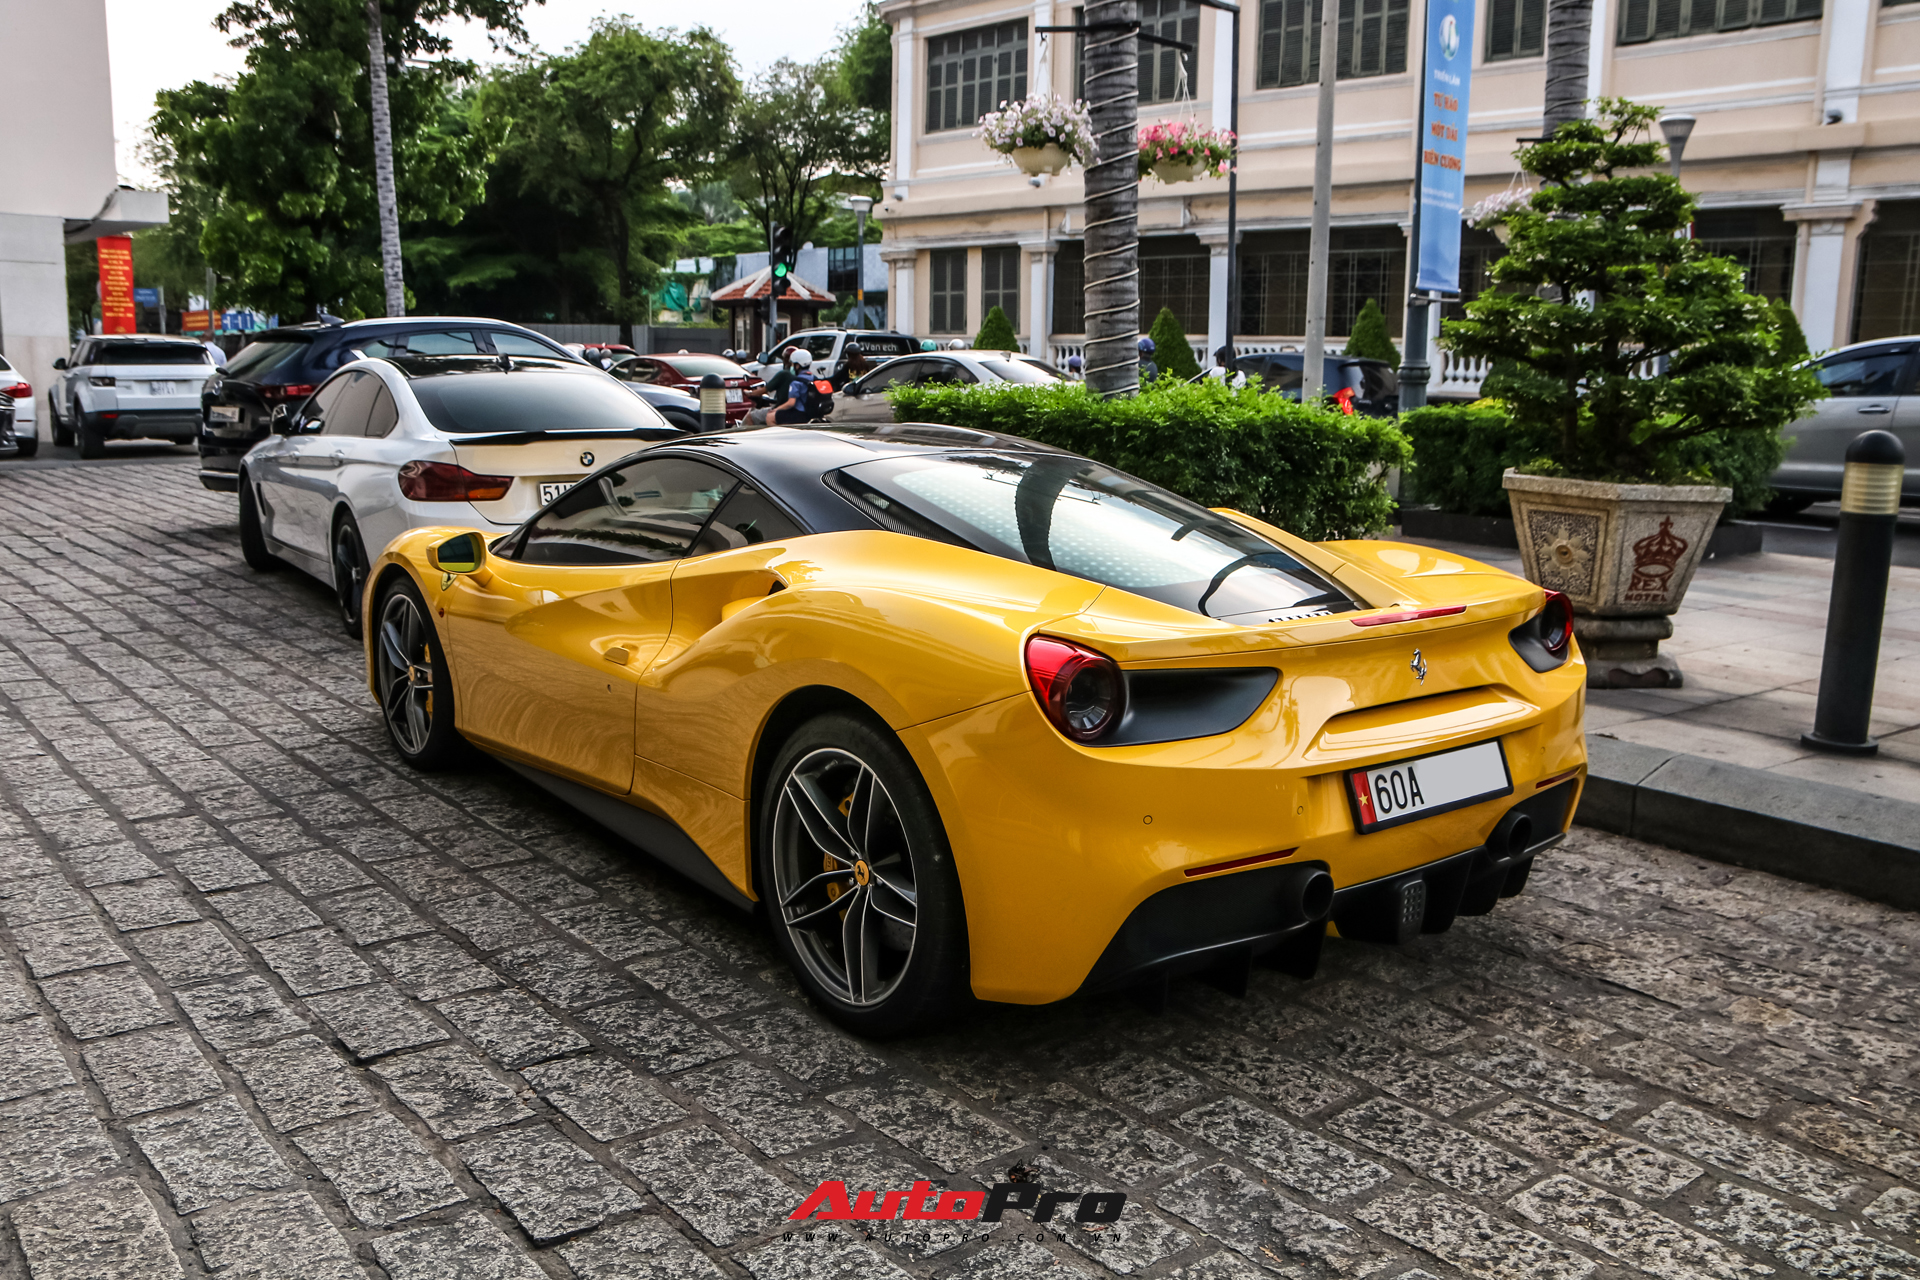 Ferrari 488 GTB của doanh nhân Đồng Nai bất ngờ xuất hiện tại Sài Gòn, lai lịch chiếc xe là điểm đáng chú ý - Ảnh 5.